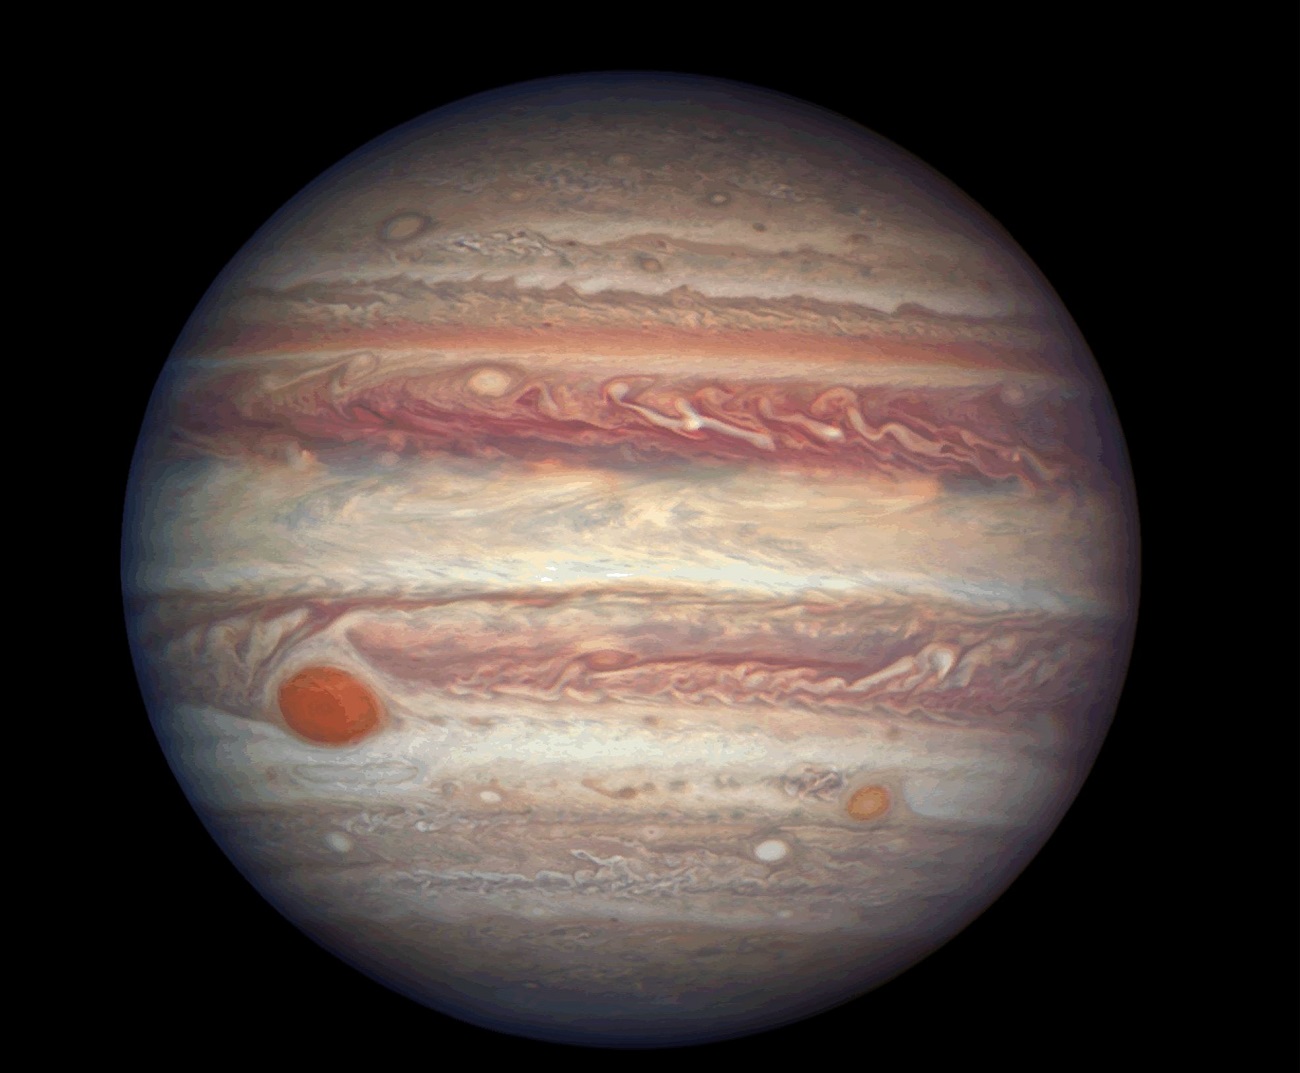 146 lat świetlnych stąd krąży obiekt podobny do Jowisza. Co wiemy na jego temat?